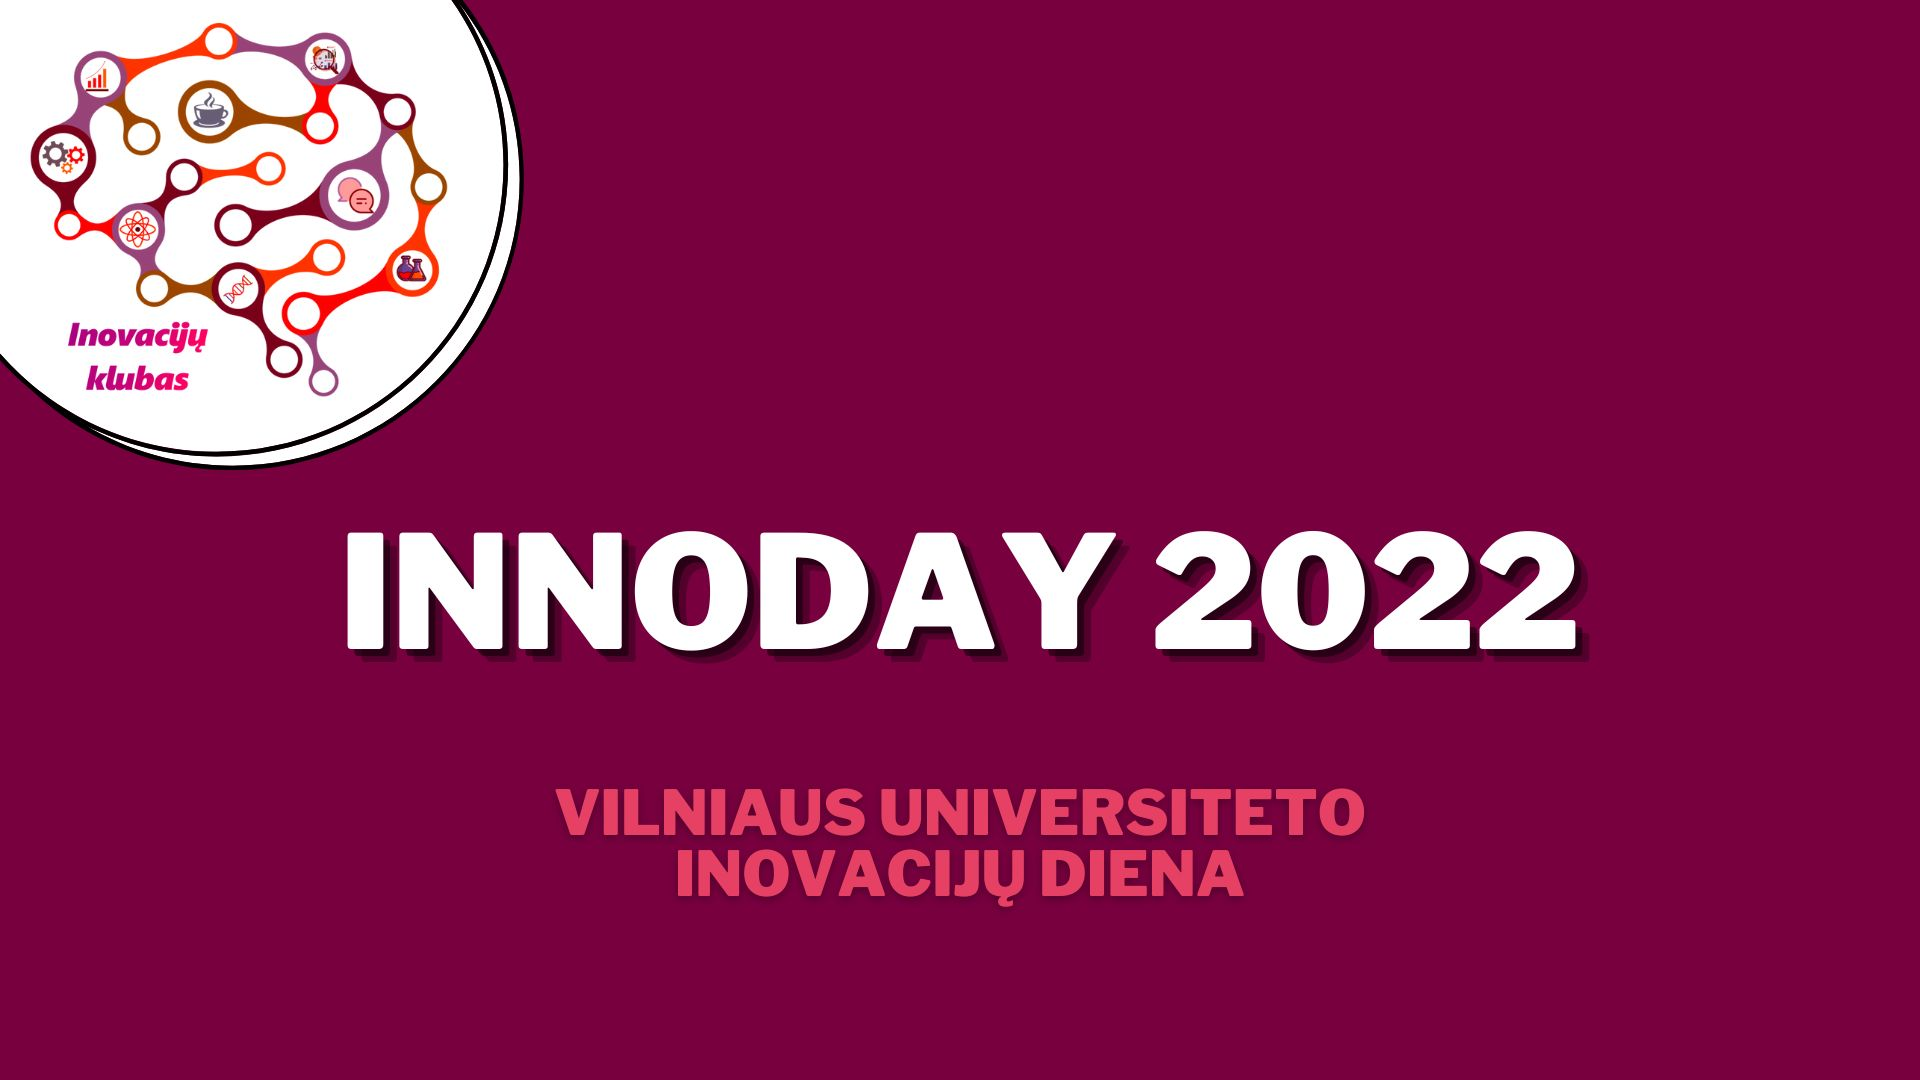 Vilniaus universiteto Inovacijų diena INNOday 2022